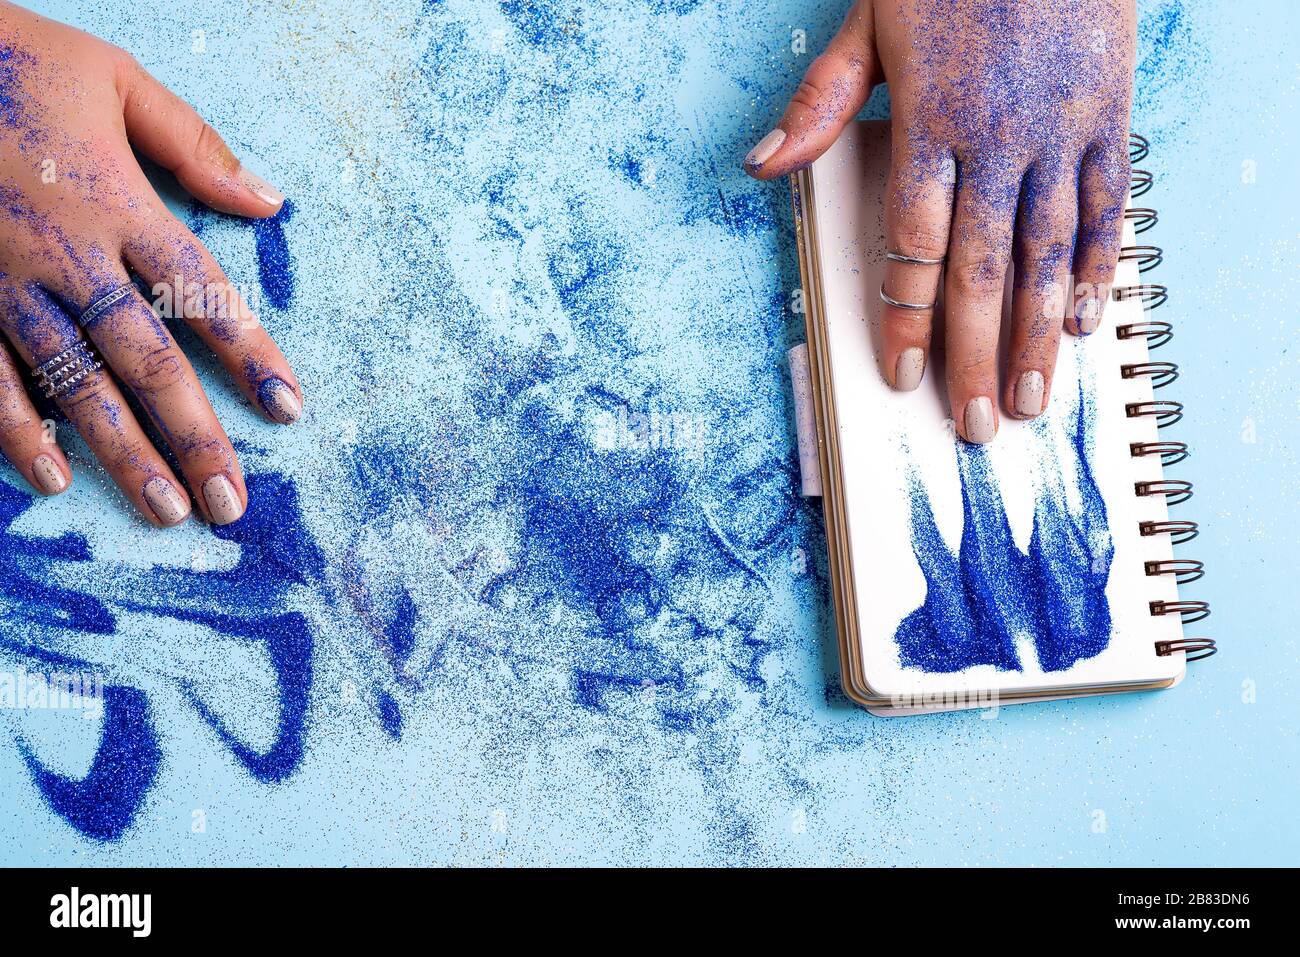 Feuille blanche vide d'ordinateur portable avec la main de la femme au-dessus du stylo, et poudre bleue décorative autour sur un fond bleu pastel, espace de copie. Banque D'Images